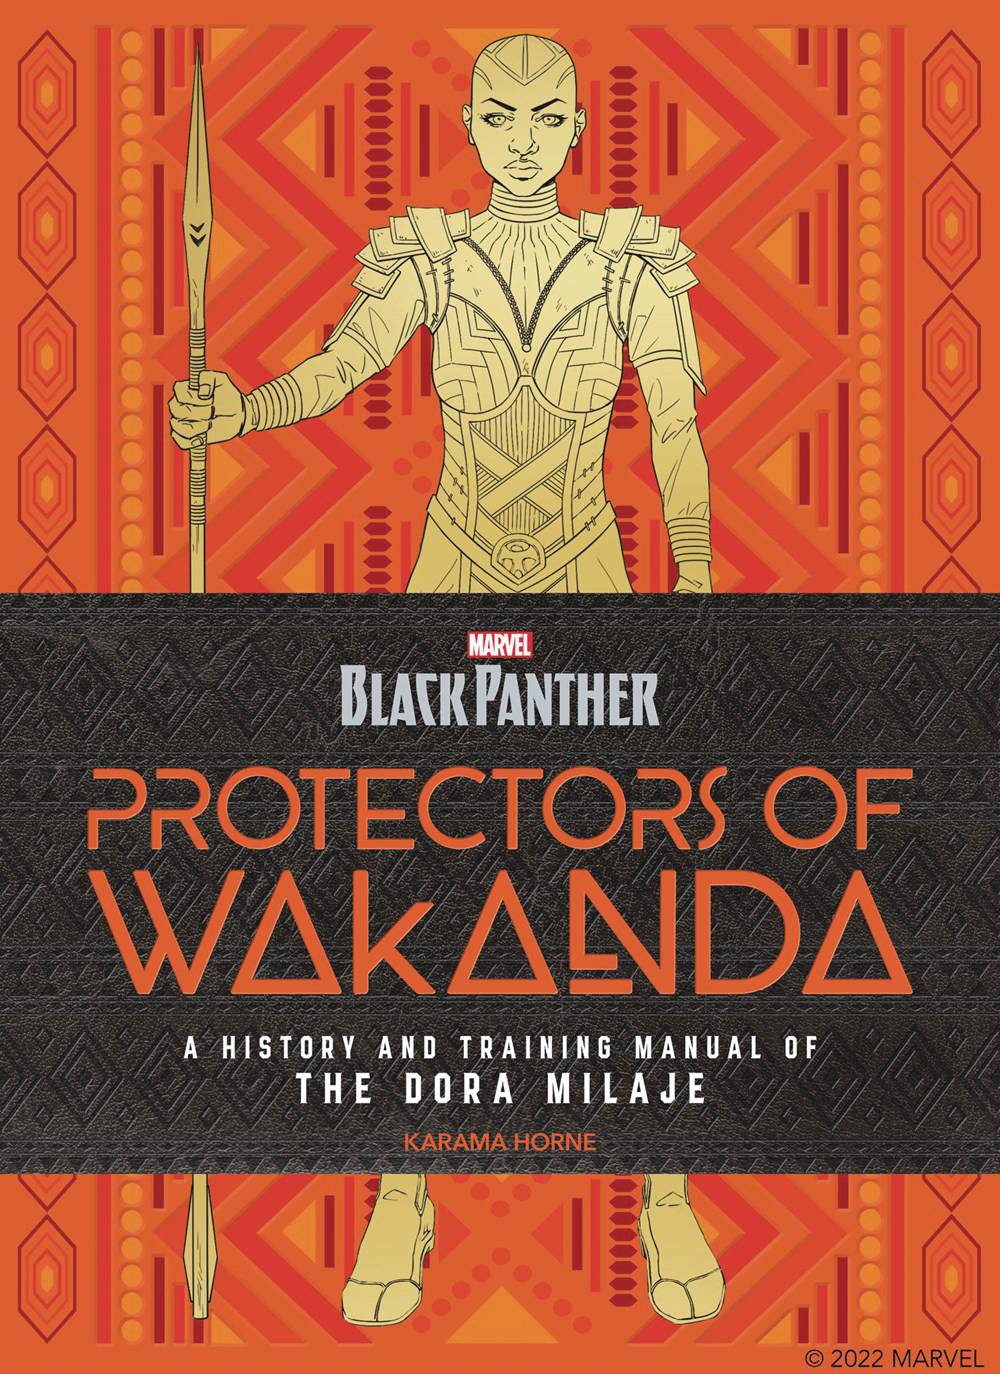 BLACK PANTHER PROTECTORS OF WAKANDA HISTORY & TRAINING MANUAL